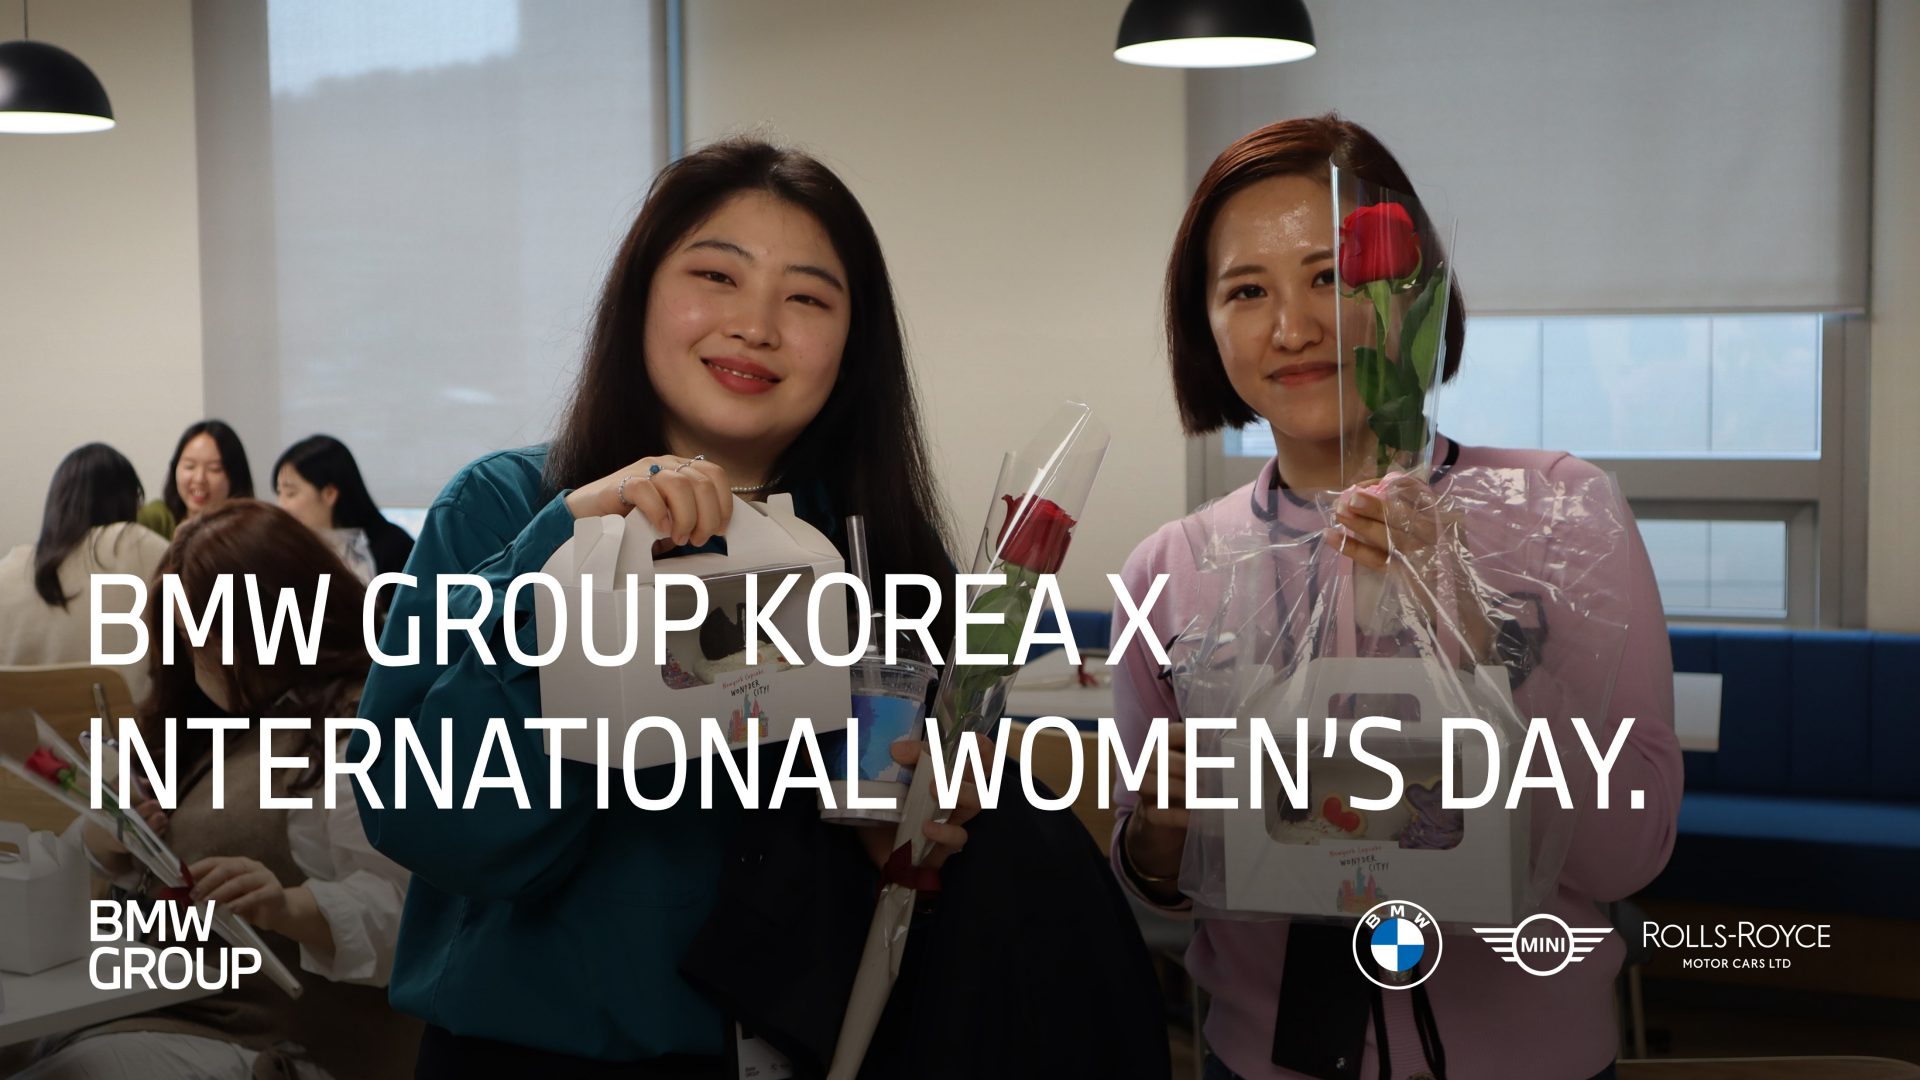 BMW Group Korea X International Women's Day.